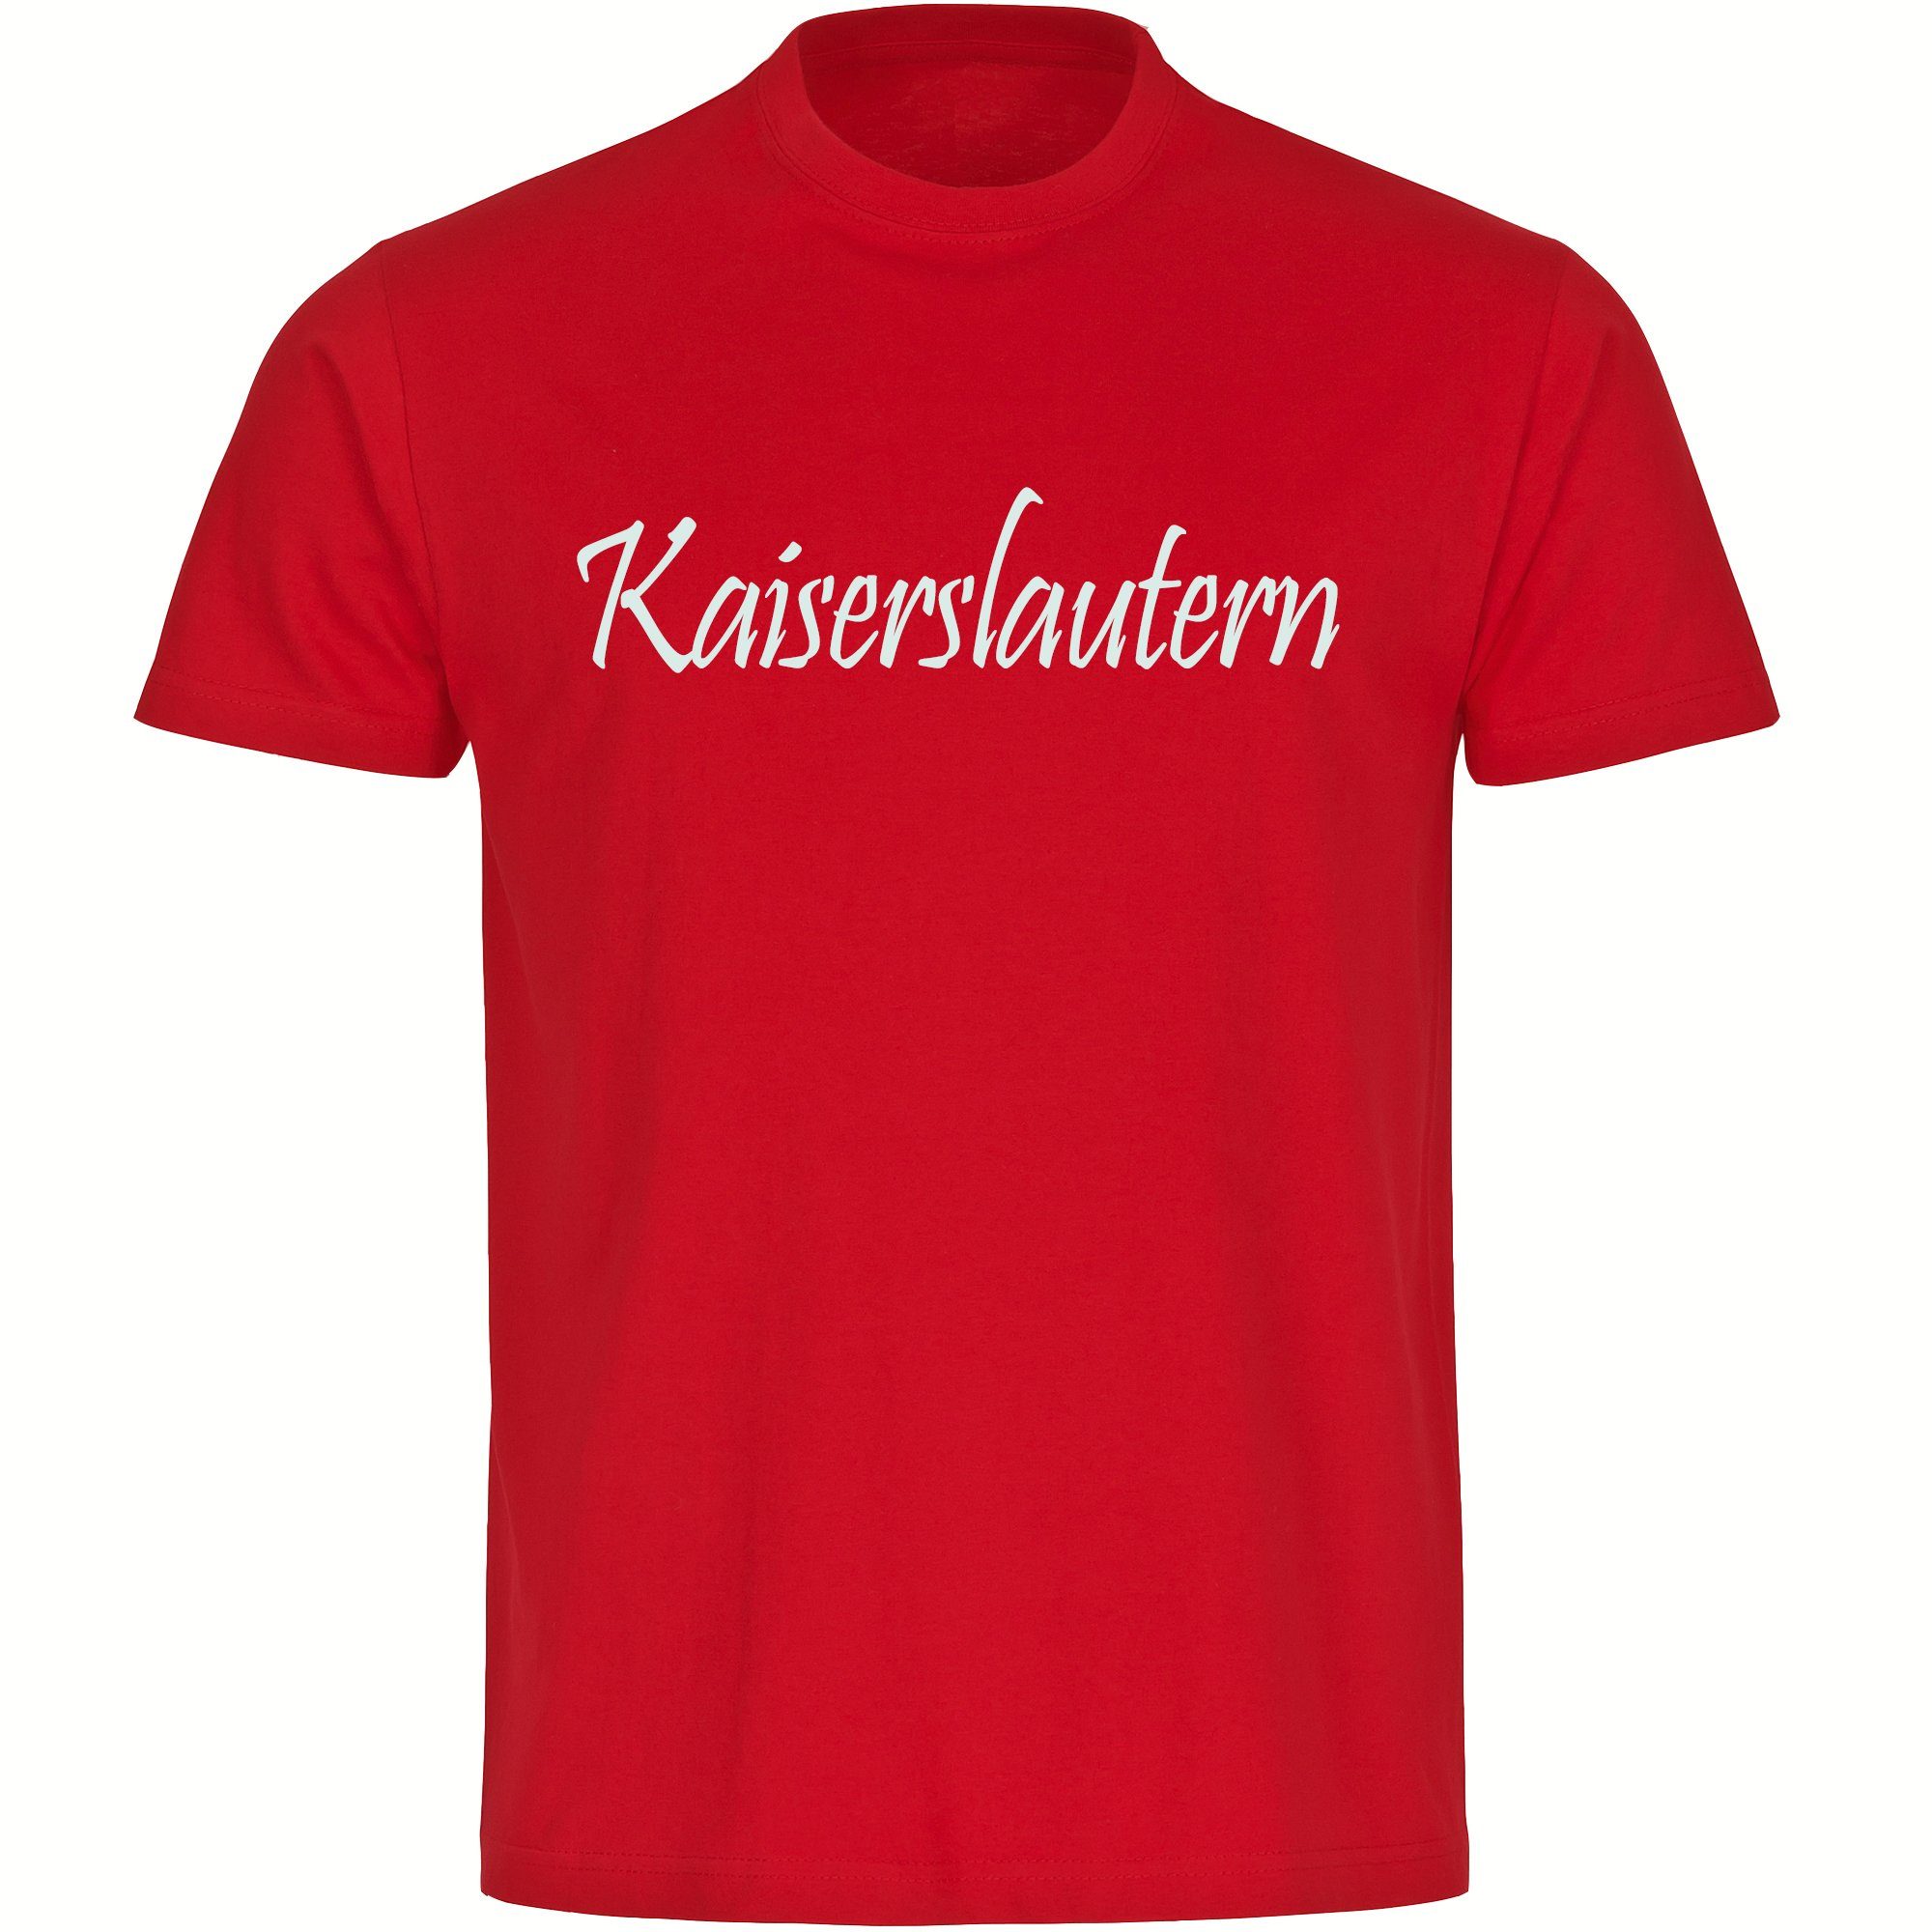 multifanshop T-Shirt Herren Kaiserslautern - Schriftzug - Männer